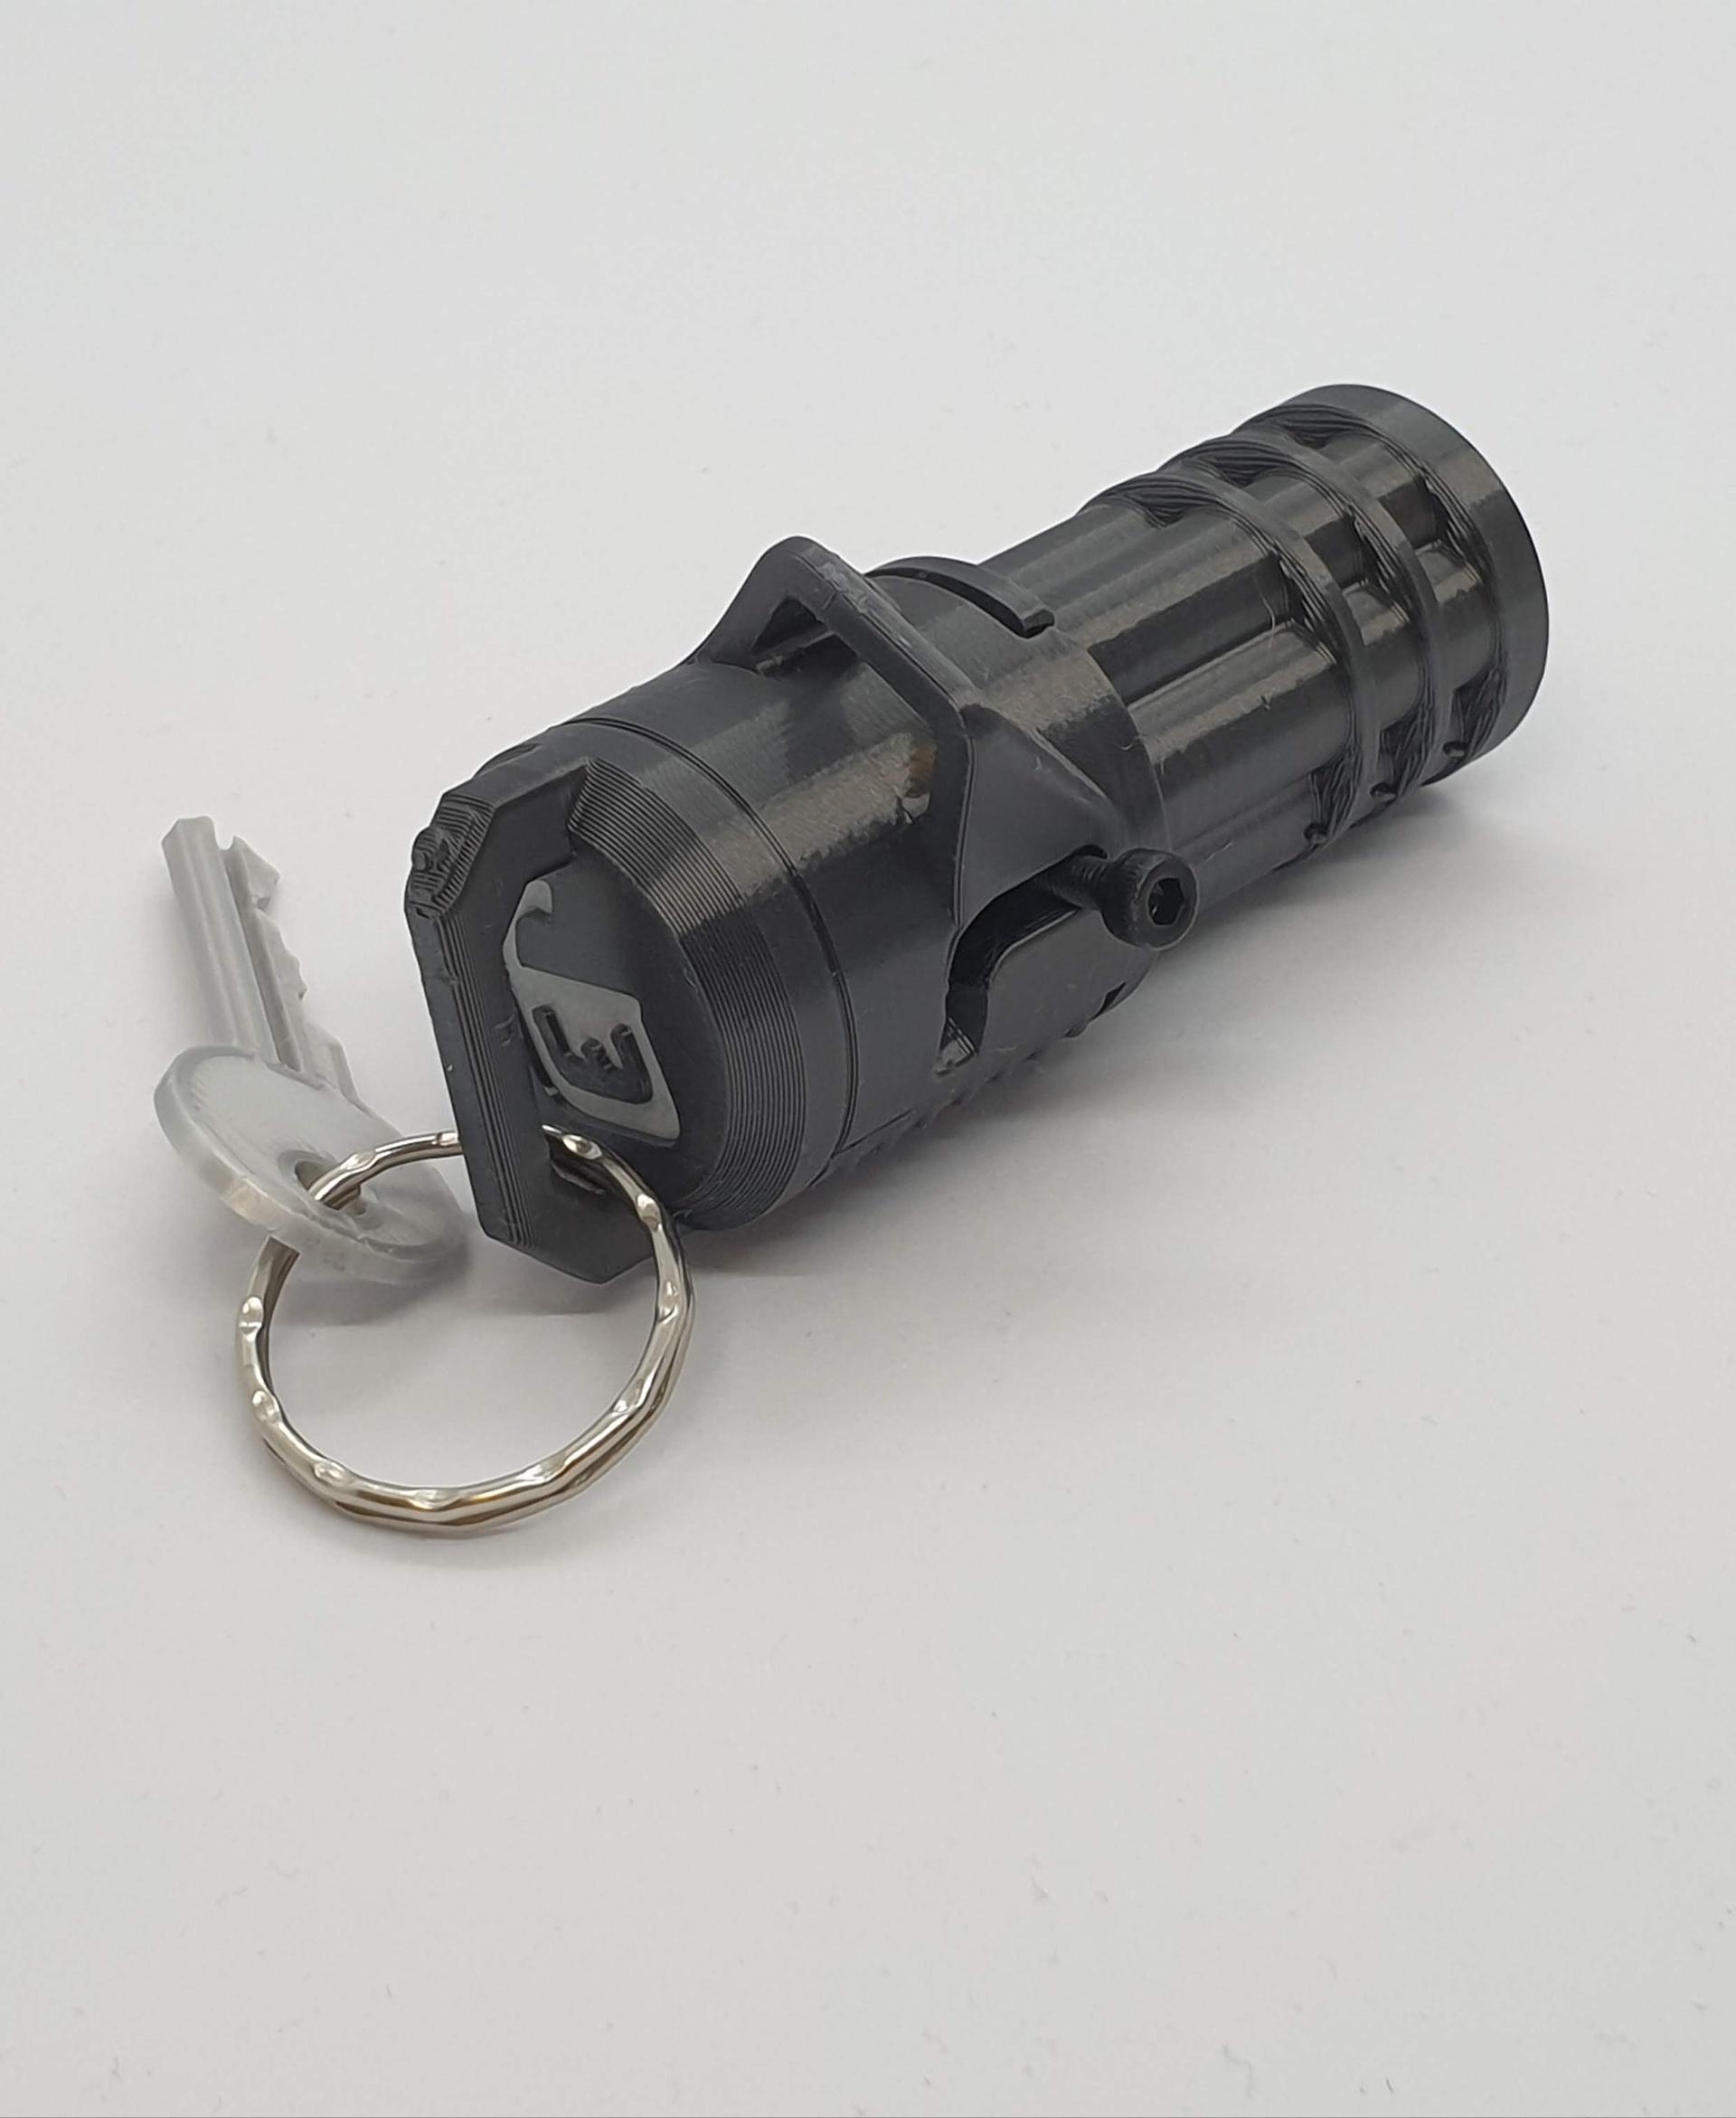 Minigun Keychain — Functional Blaster 3d model